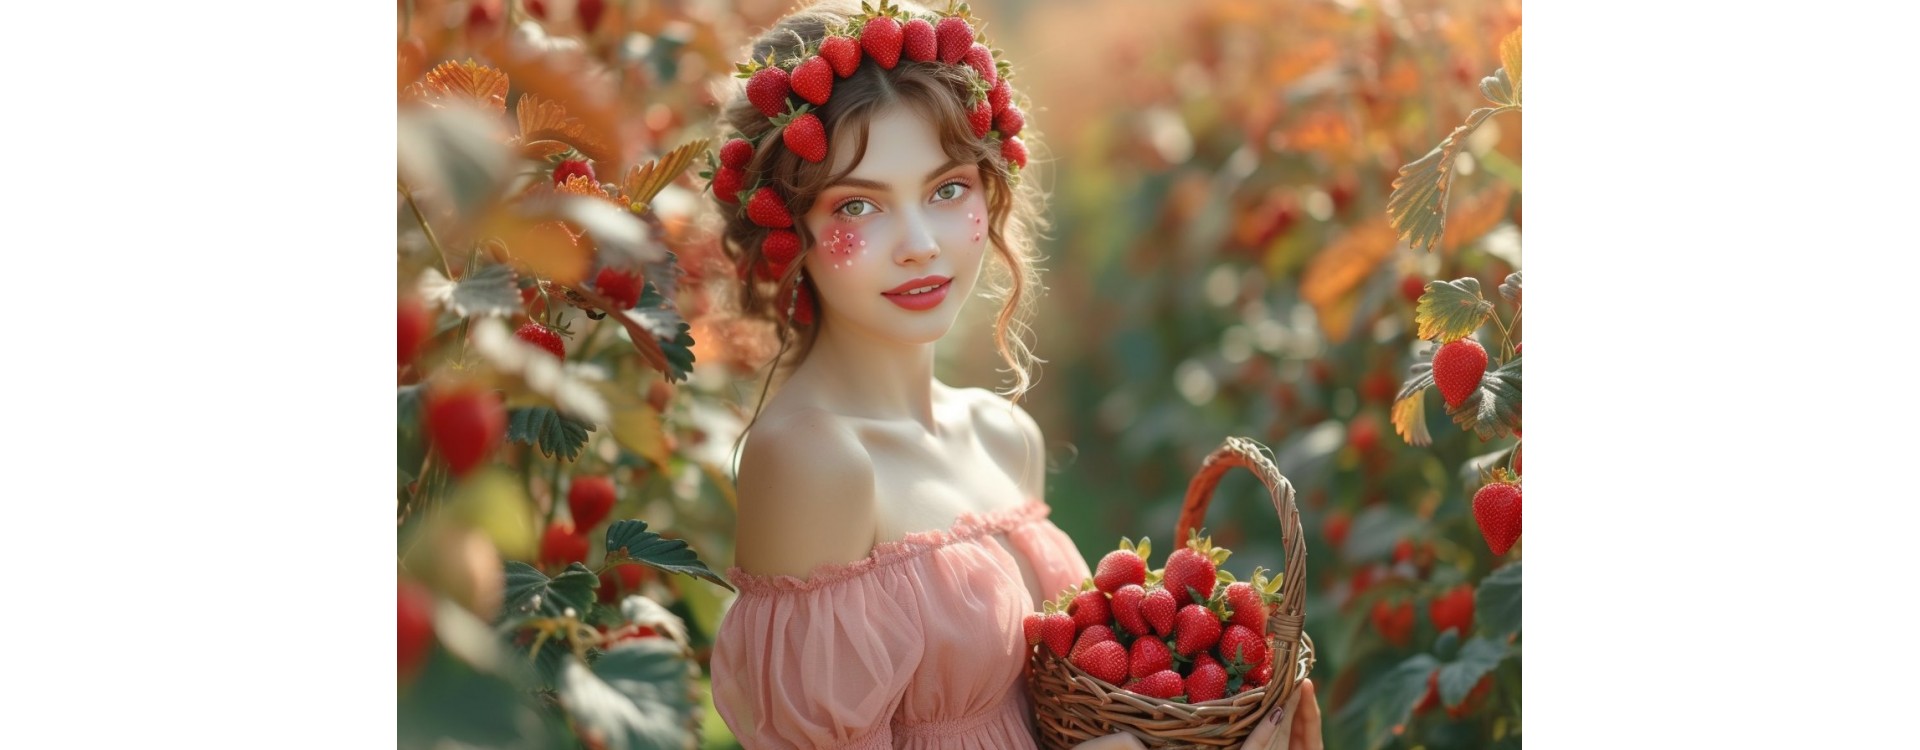 La tendance beauté Strawberry Girl : une touche de fraîcheur cet automne